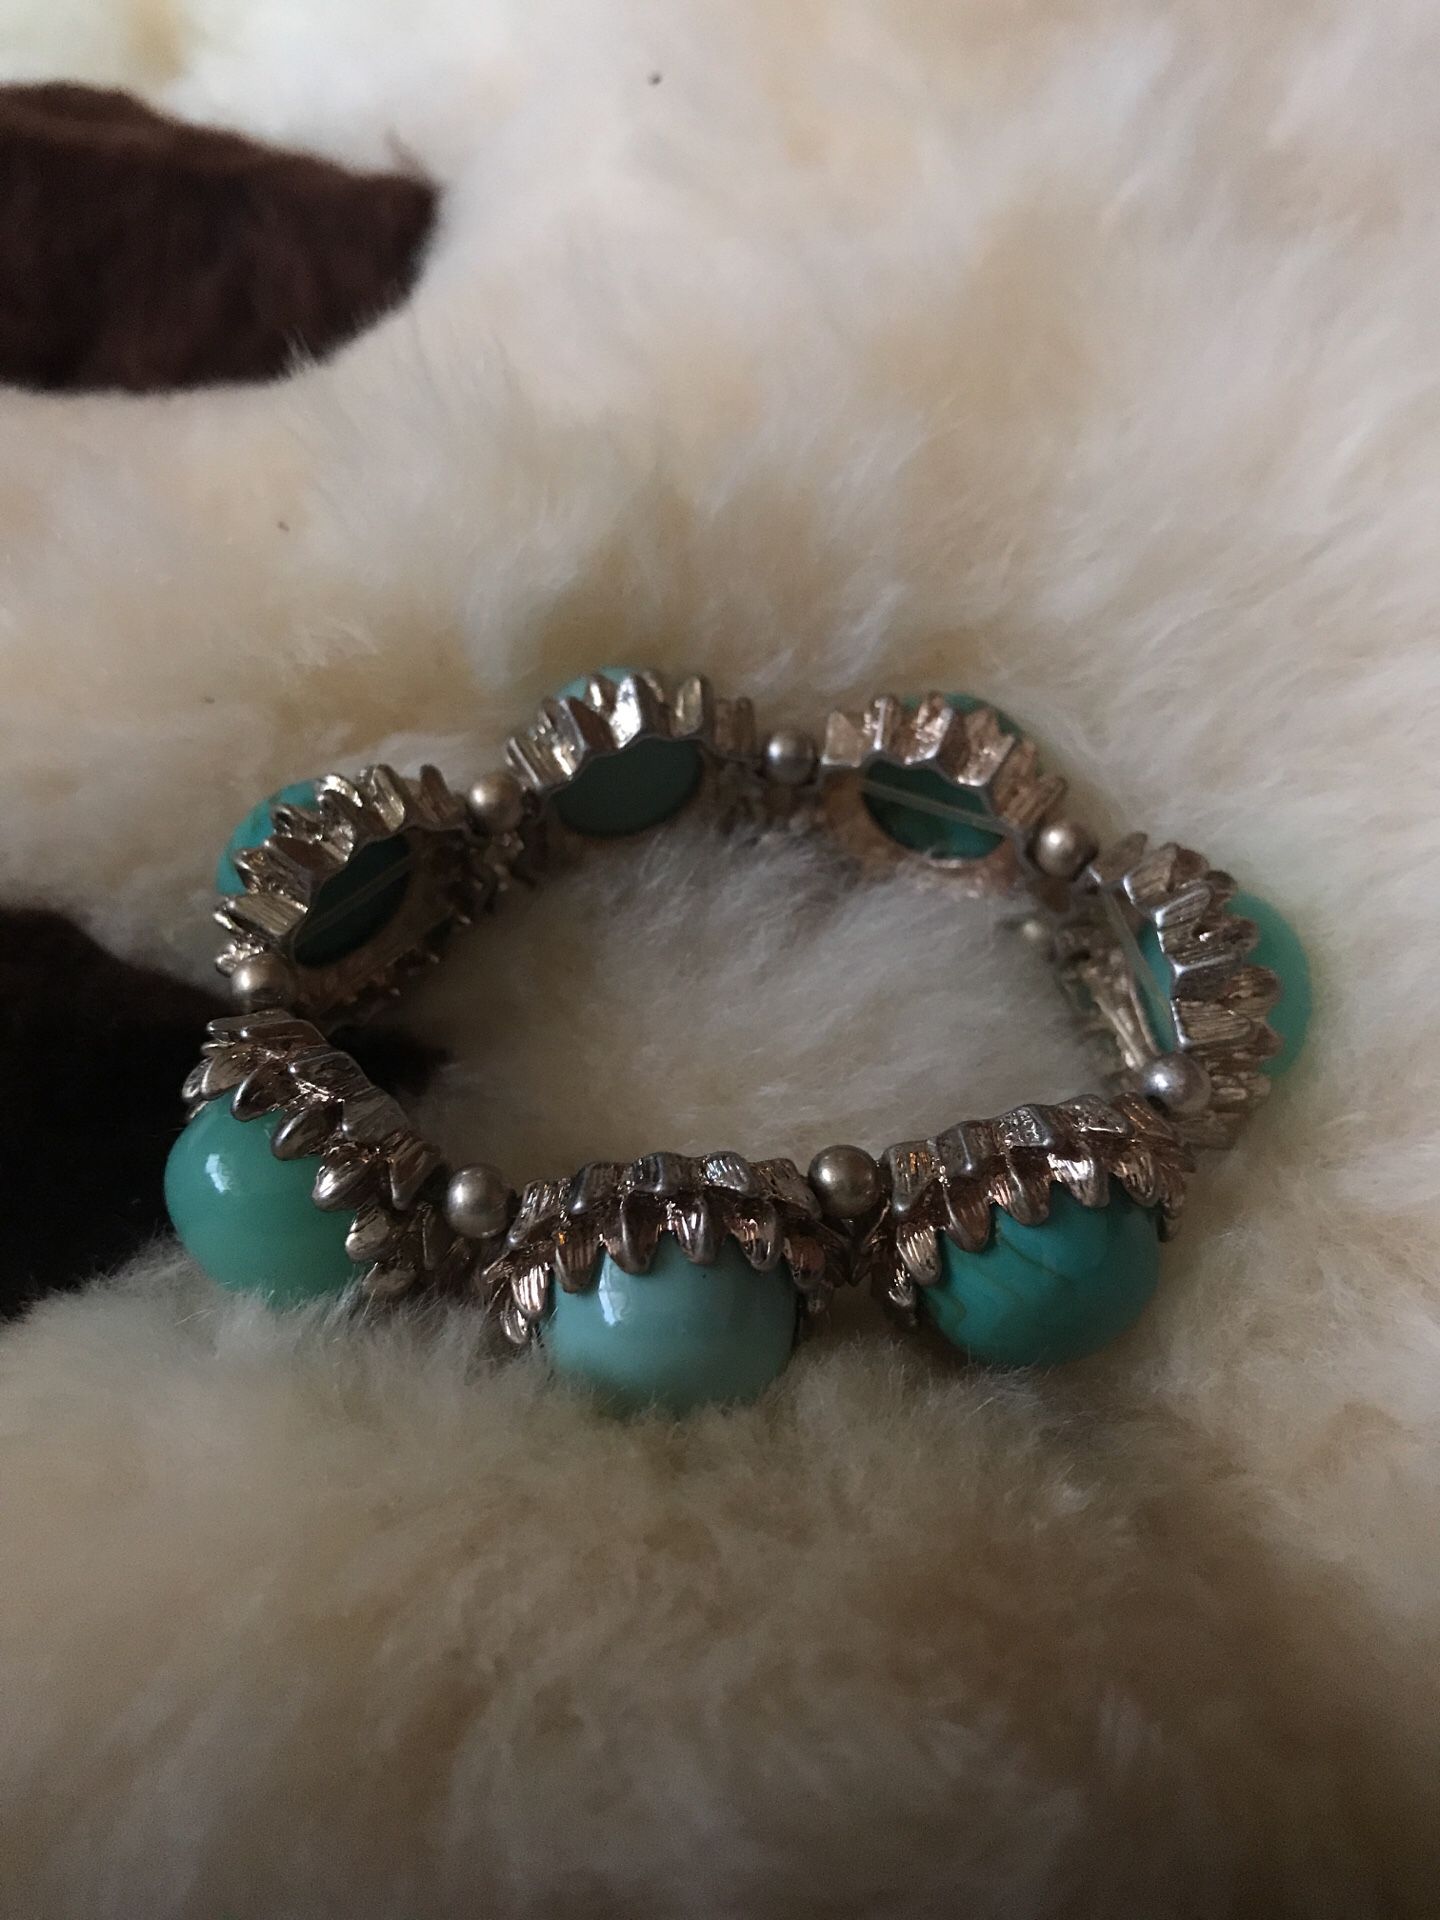 Turquoise custom jewelry bracelet